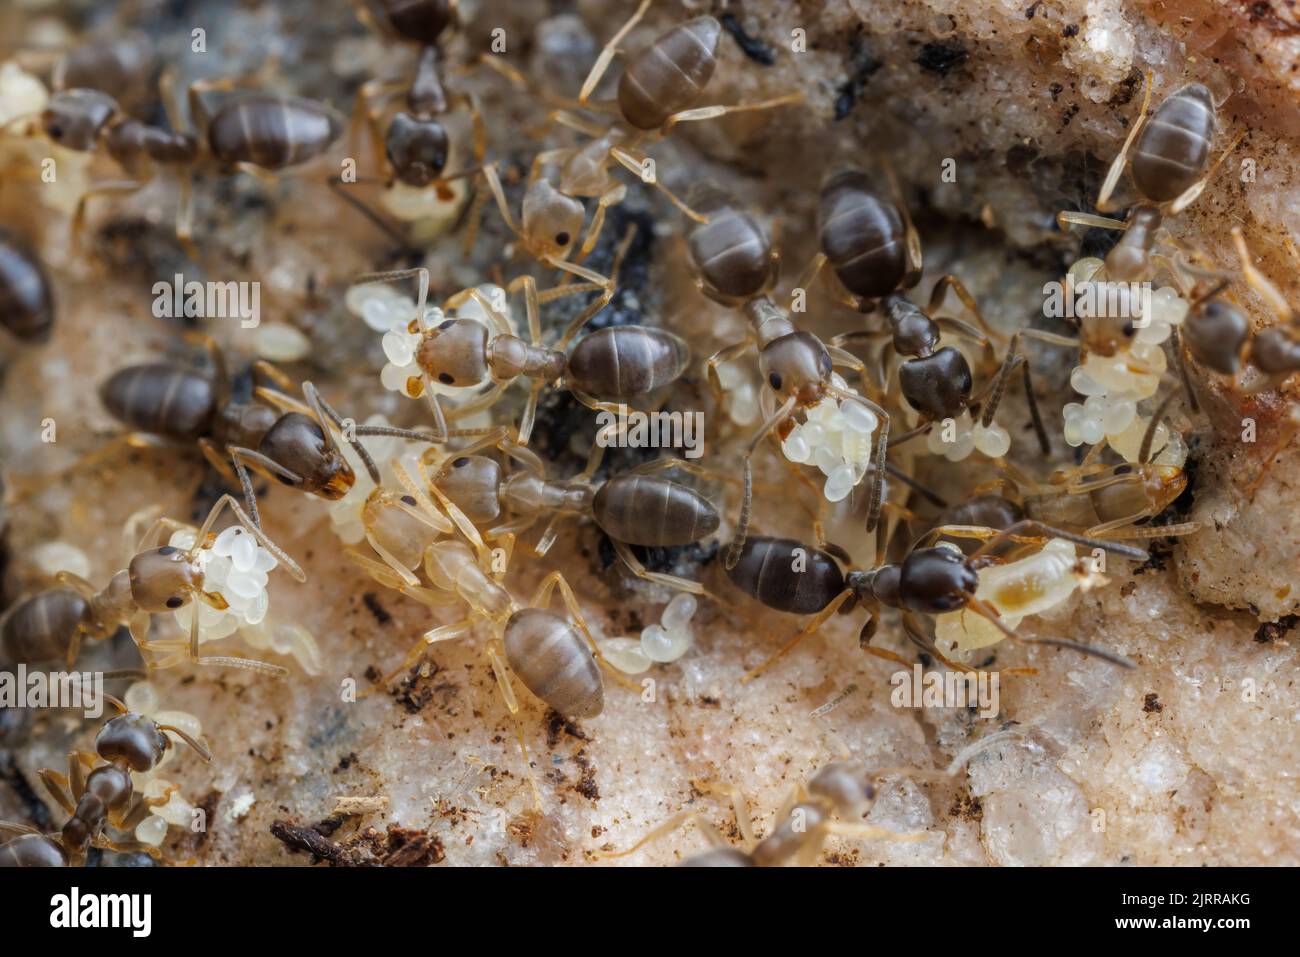 Riechende Hausansen (Tapinoma sessile) verlagern sich, Eier, Larven und Puppen in einem gestörten Nest. Stockfoto